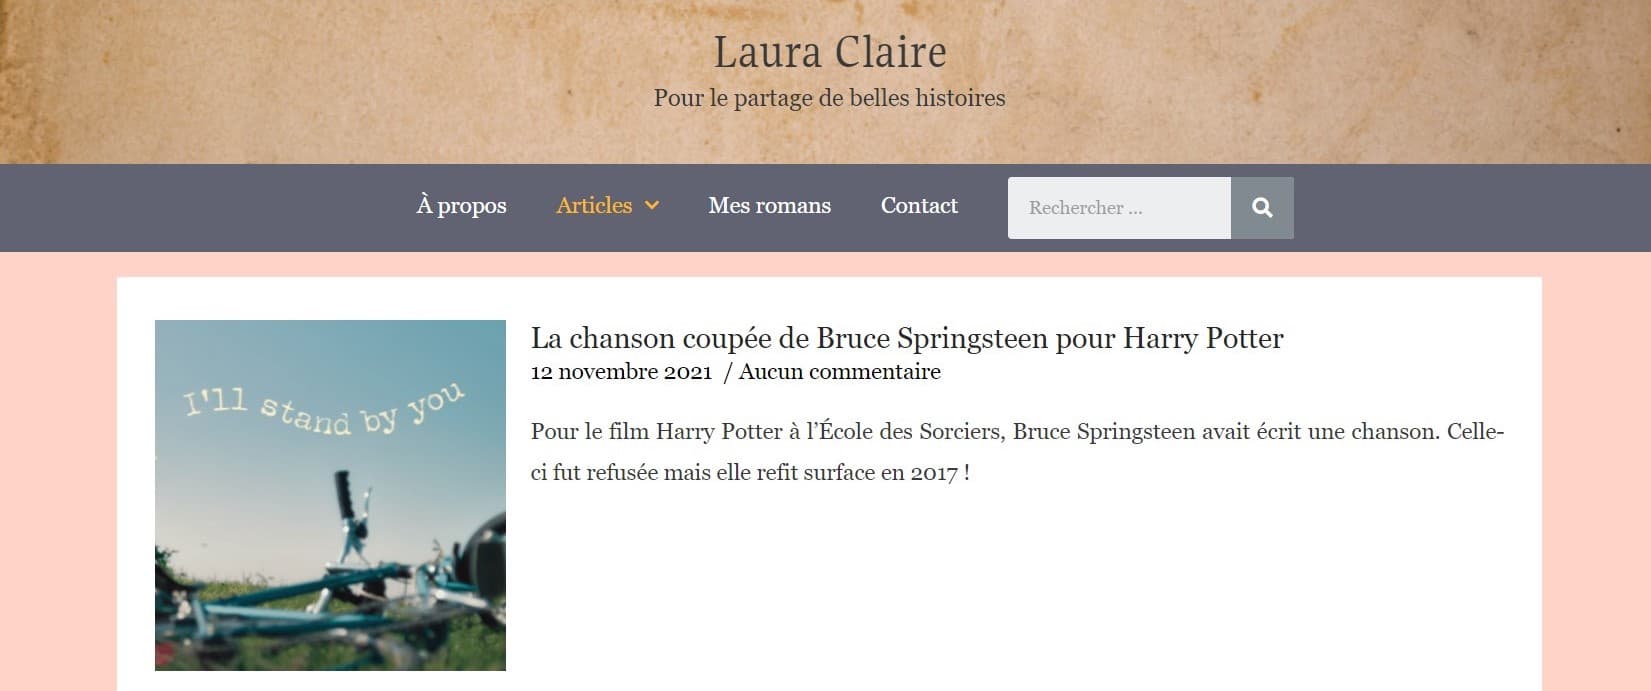 Sur cette capture d'écran, on peut voir que le titre du site "Laura Claire : Pour le partage de belles histoires" est désormais écrit sur un arrière-plan qui fait penser à un papier parchemin.